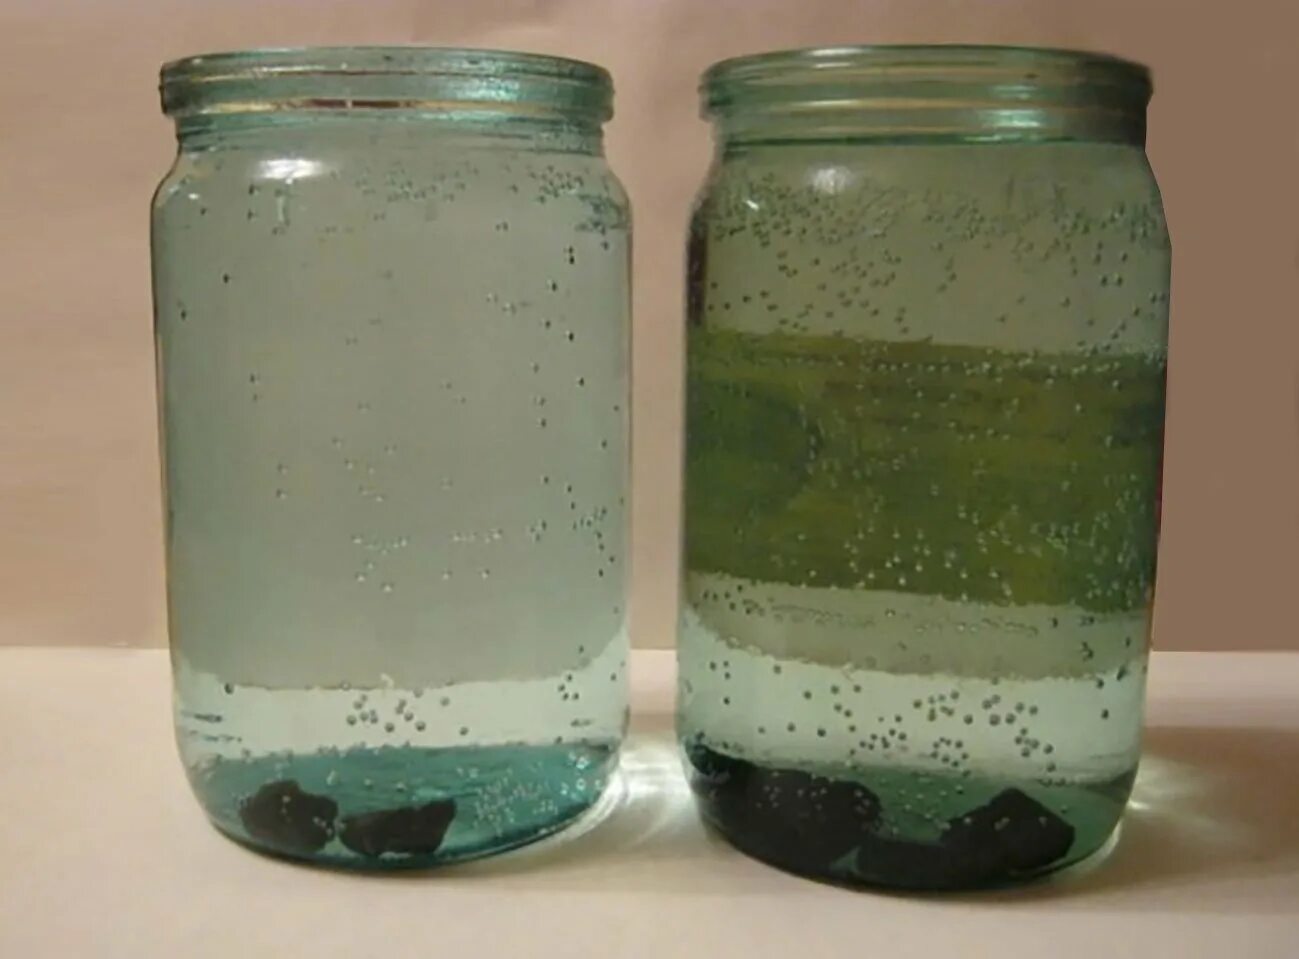 Вода в фильтре зеленеет. Банка с водой. Баночка с мутной жидкостью. Осадок в воде. Банка с зеленой жидкостью.